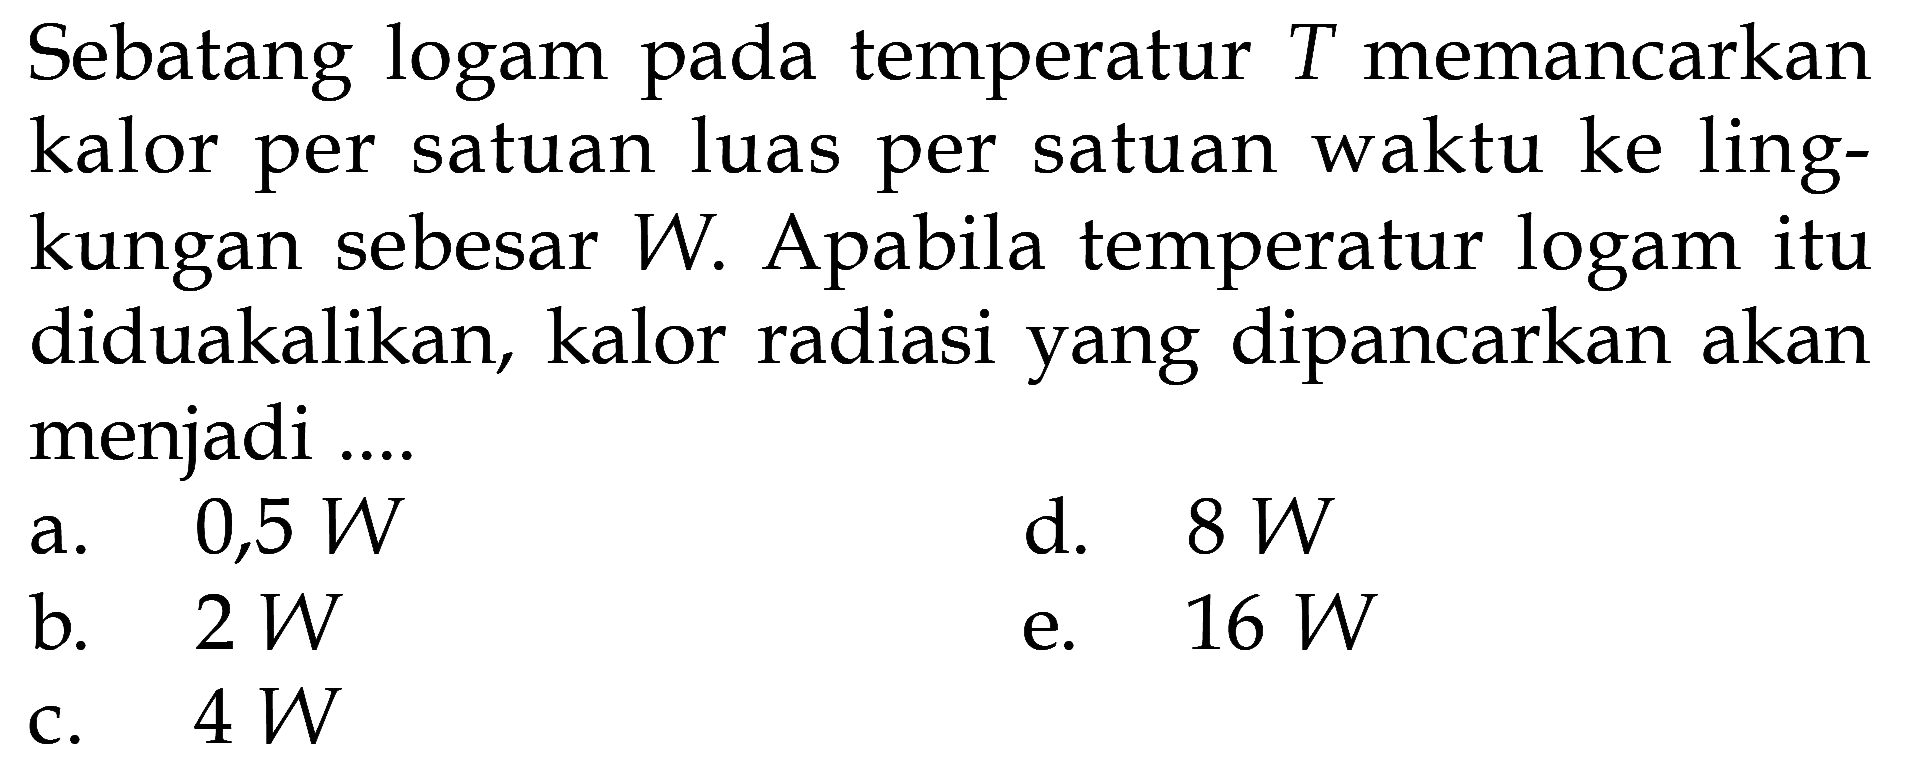 Sebatang logam pada temperatur T memancarkan kalor per satuan luas per satuan waktu ke lingkungan sebesar W. Apabila temperatur logam itu diduakalikan, kalor radiasi yang dipancarkan akan menjadi ....
